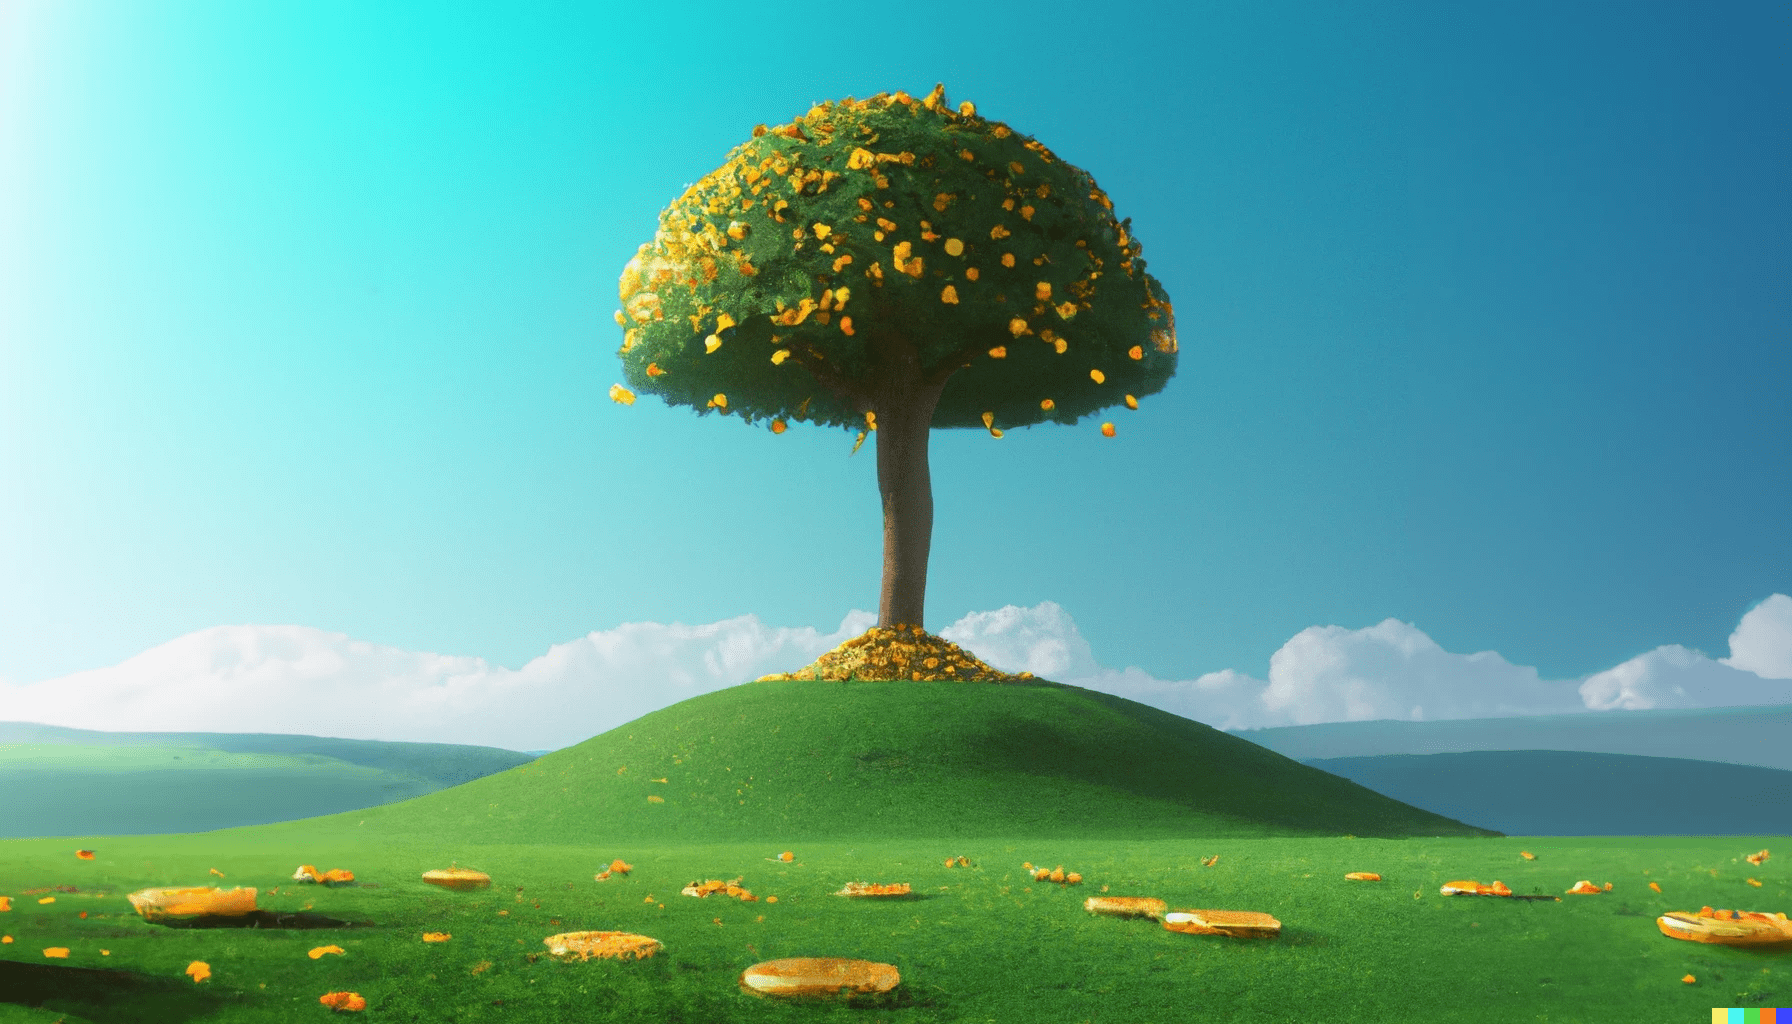 Zeichnung eines Baums auf einem Hügel mit goldenen Münzen als Blätter